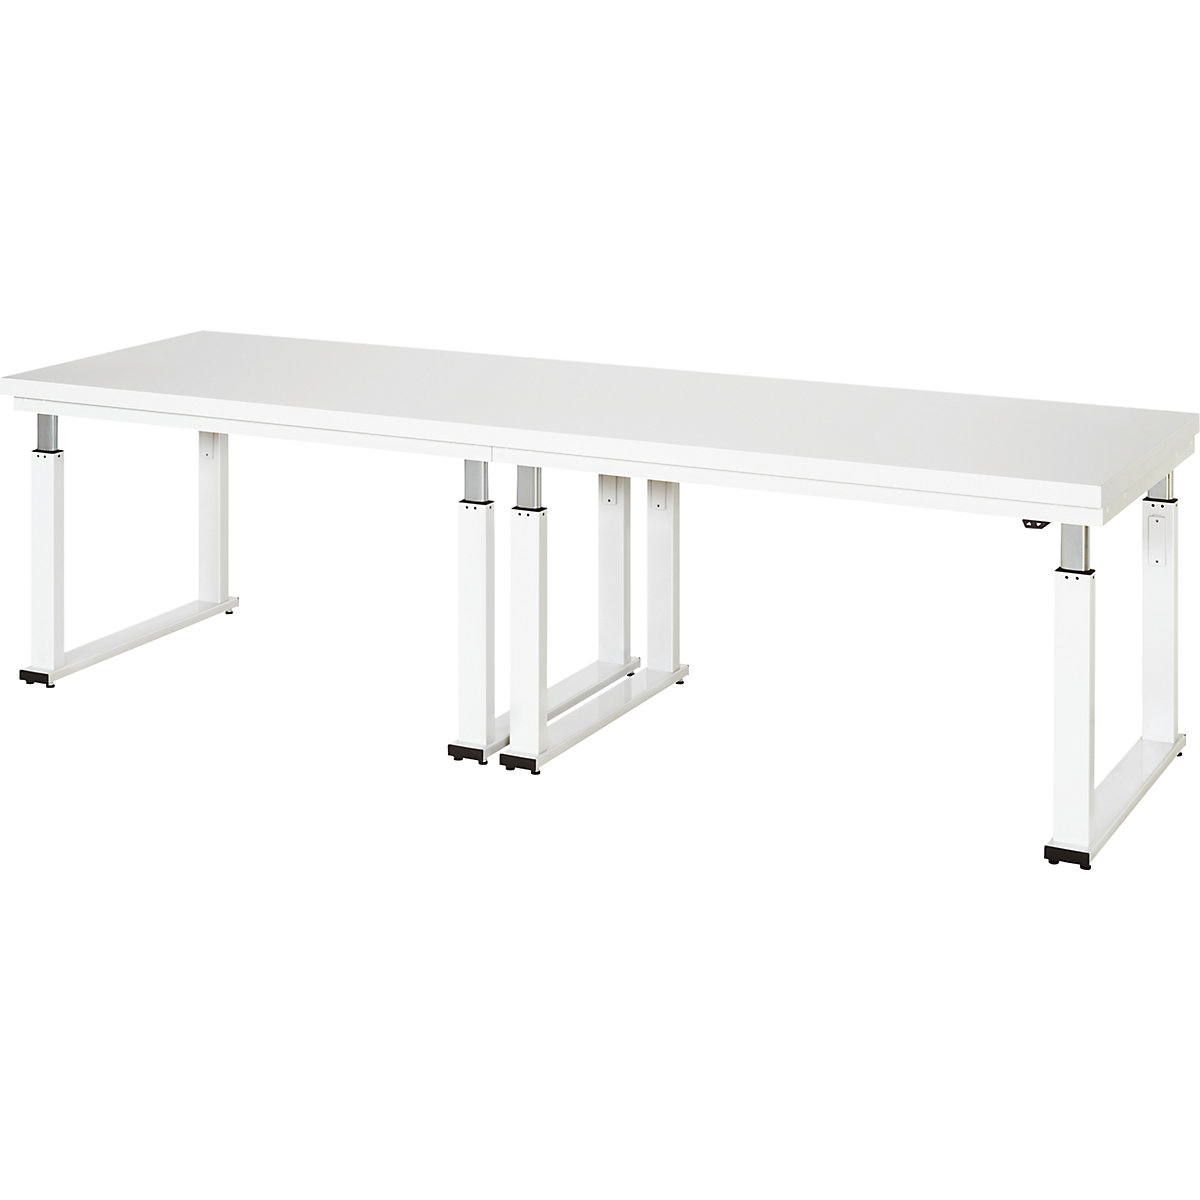 Psací stůl s elektrickým přestavováním výšky – RAU, deska z tvrdého laminátu, nosnost 600 kg, š x h 3000 x 900 mm-15